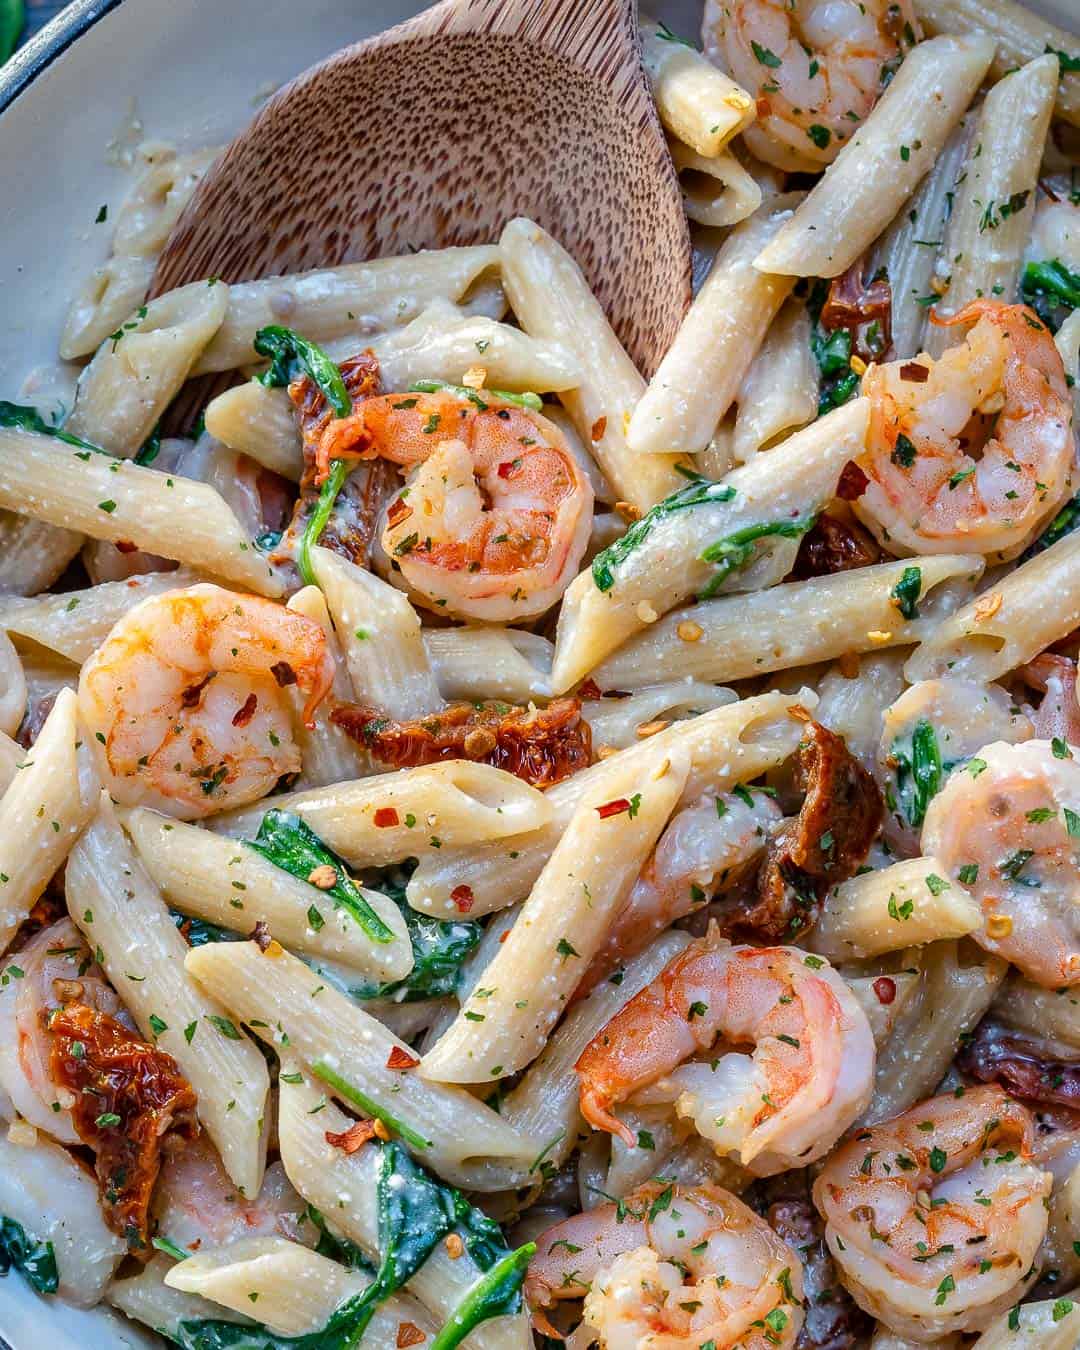 creamy shrimp pasta